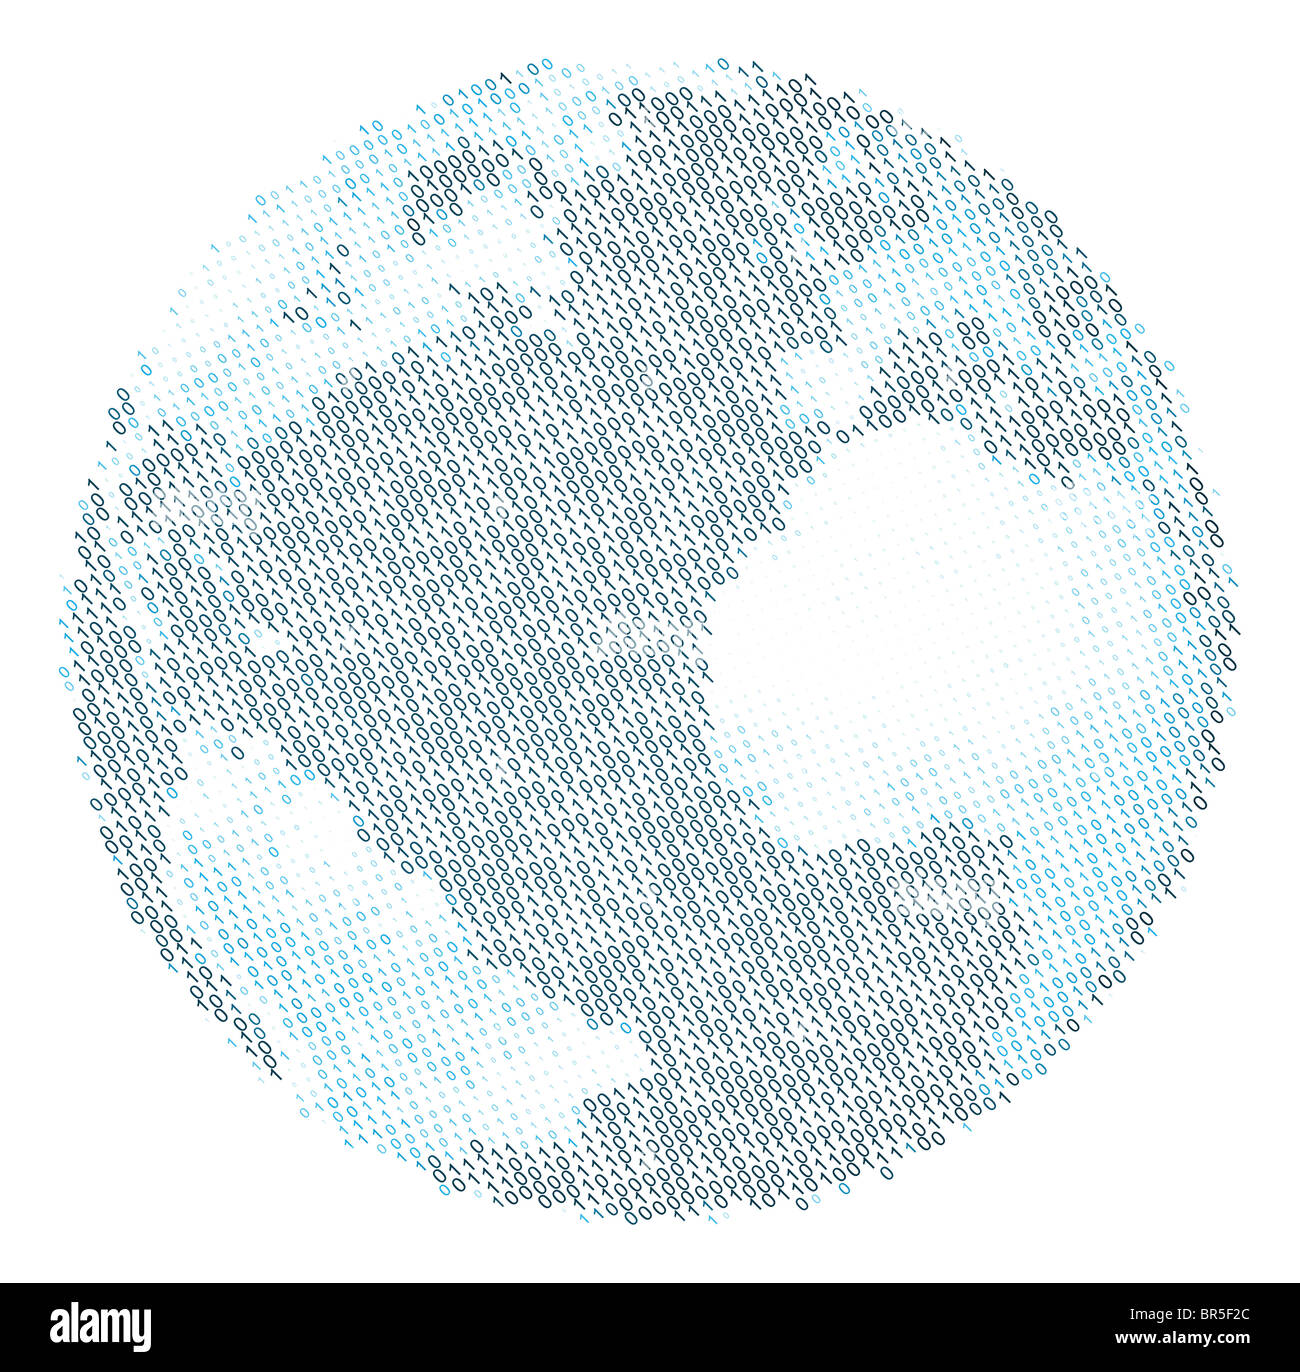 Una illustrazione del mondo, utilizzando il codice binario per raffigurare i continenti e gli oceani Foto Stock